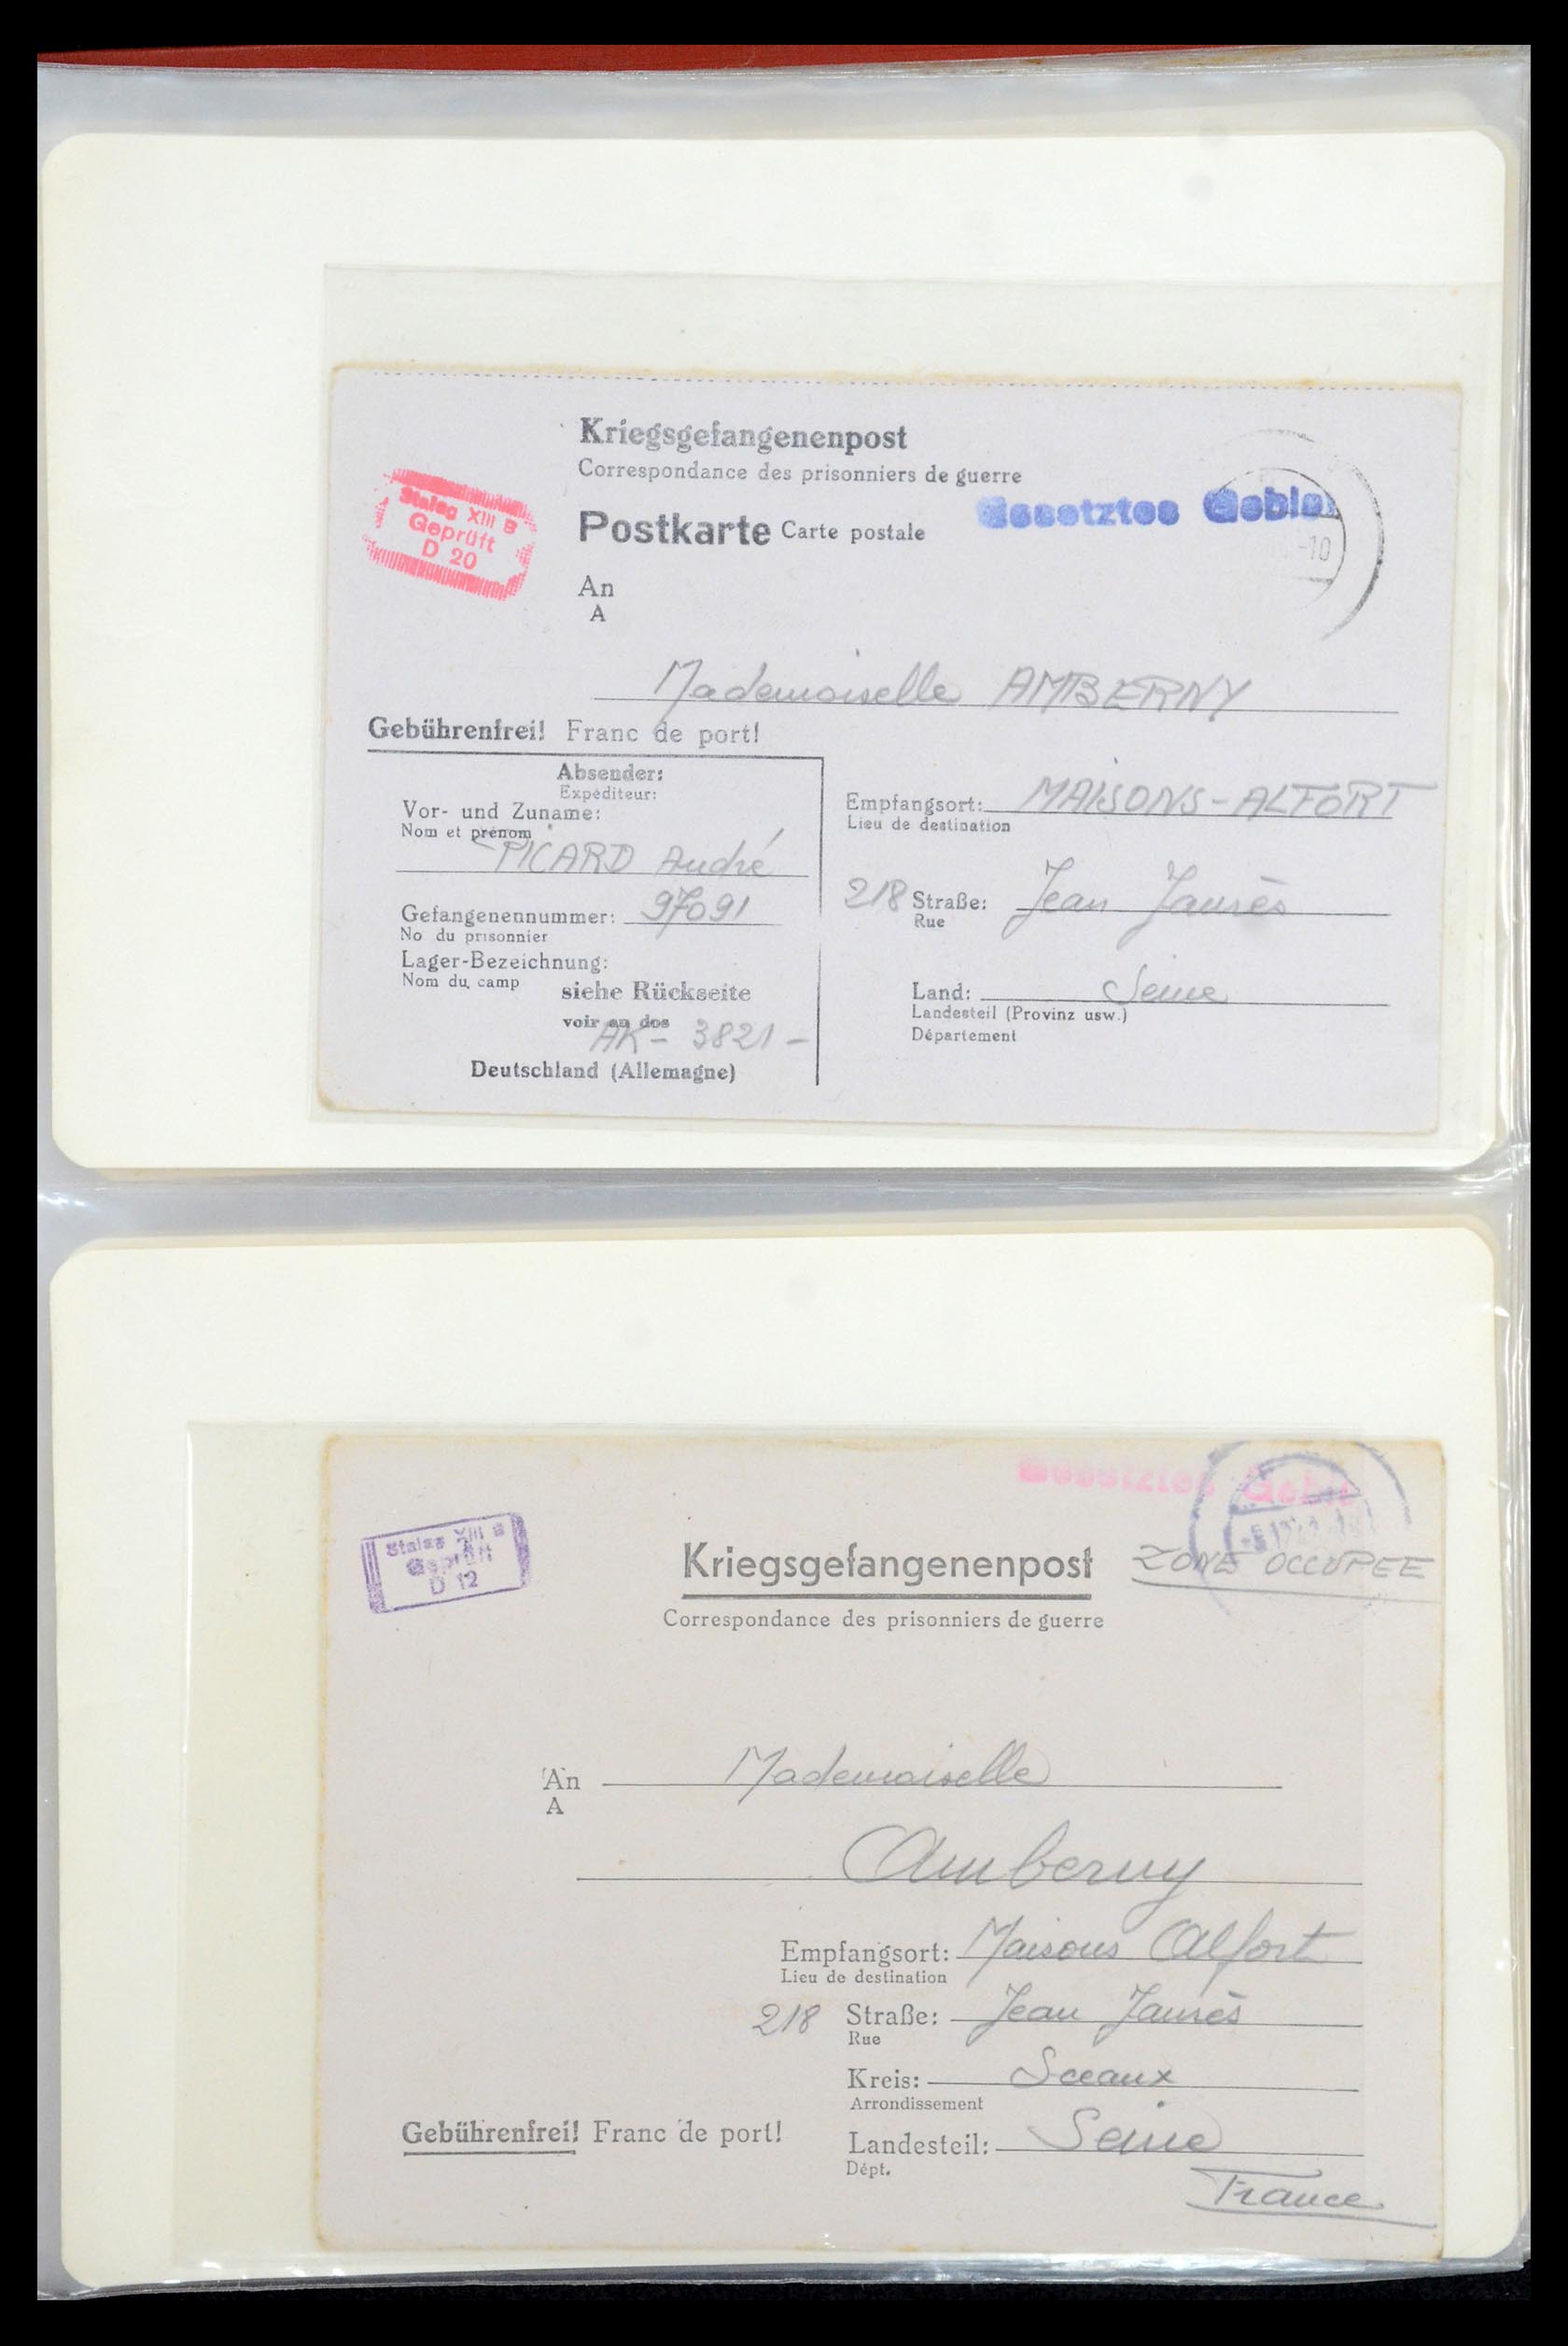 35599 001 - Stamp Collection 35599 Germany prisoner of war cards 1940-1944.